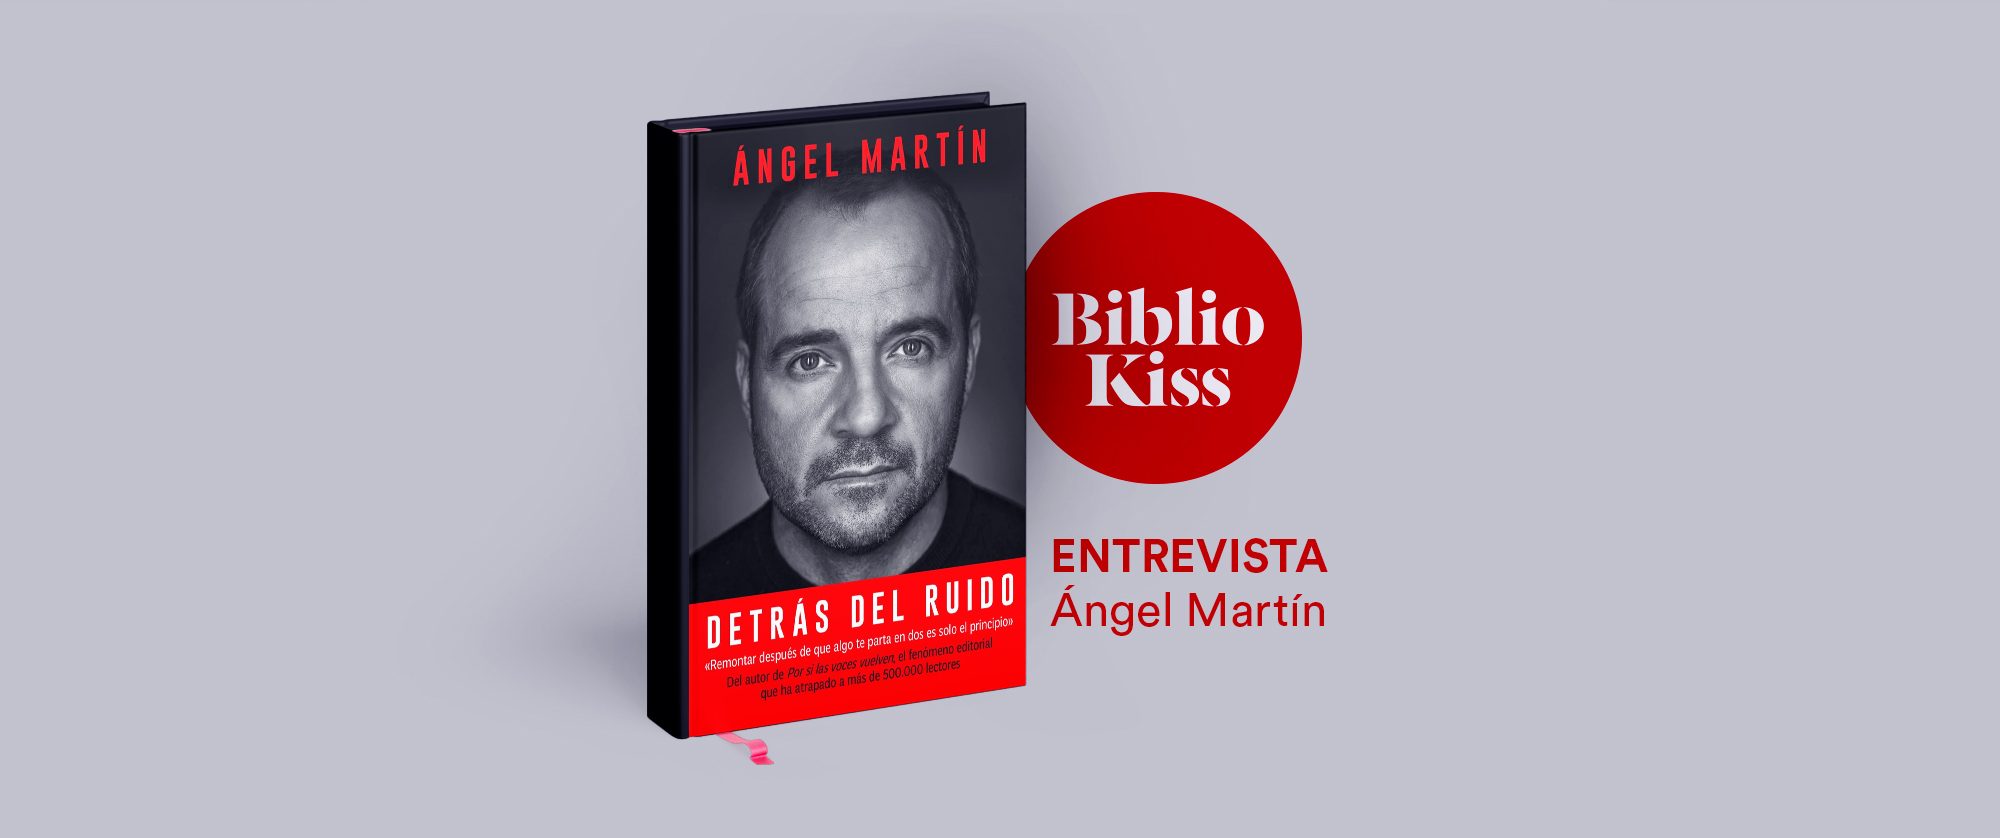 Detrás del ruido by Ángel Martín (audiobook) - Apple Books